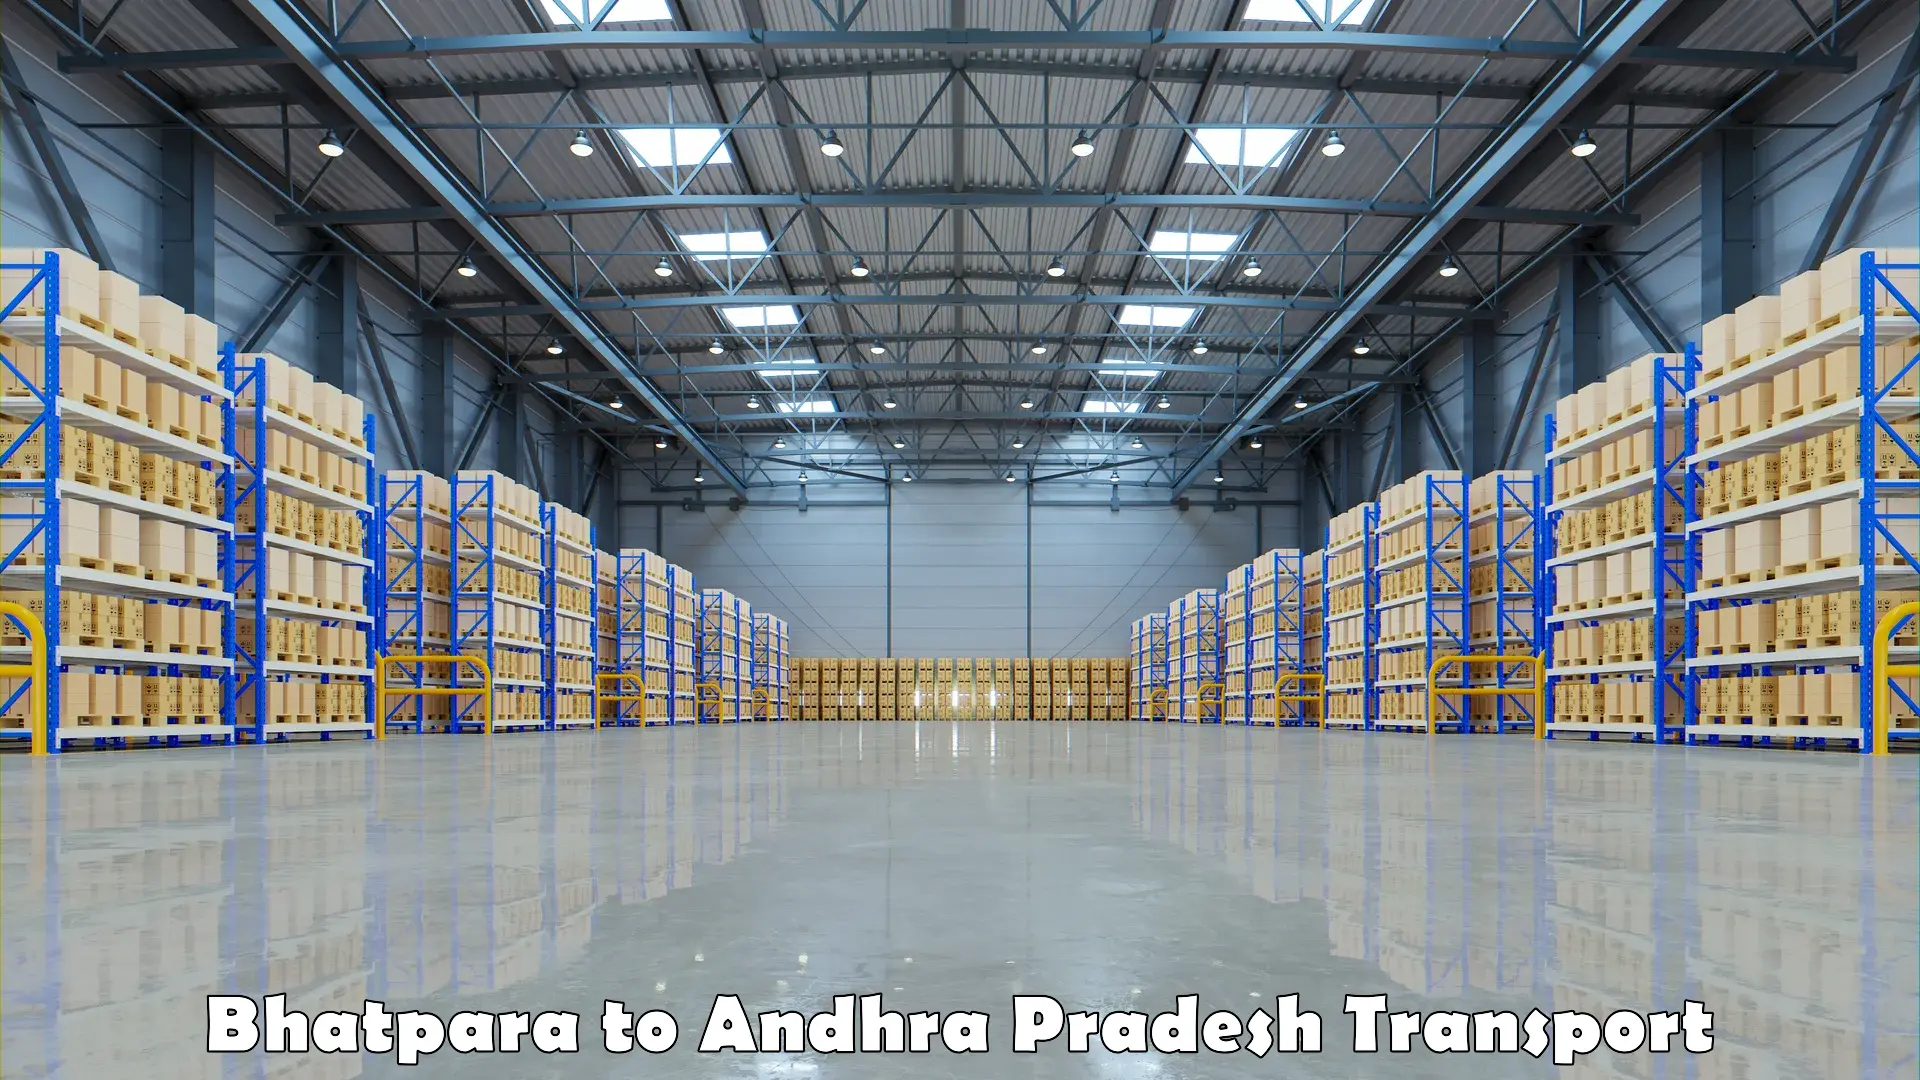 Cargo train transport services Bhatpara to Andhra Pradesh